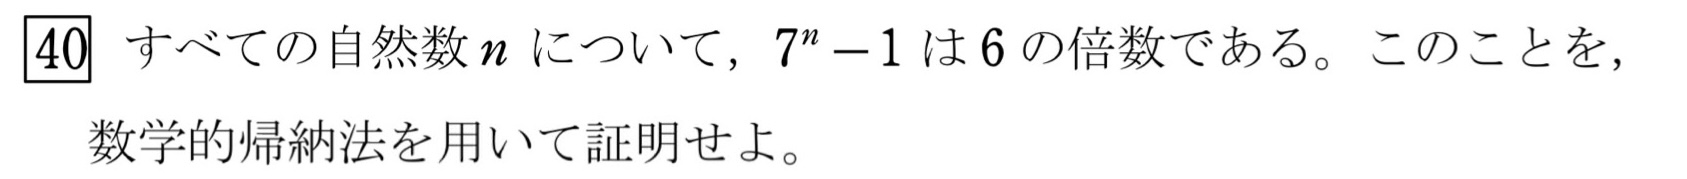 数学的帰納法(倍数) 問題